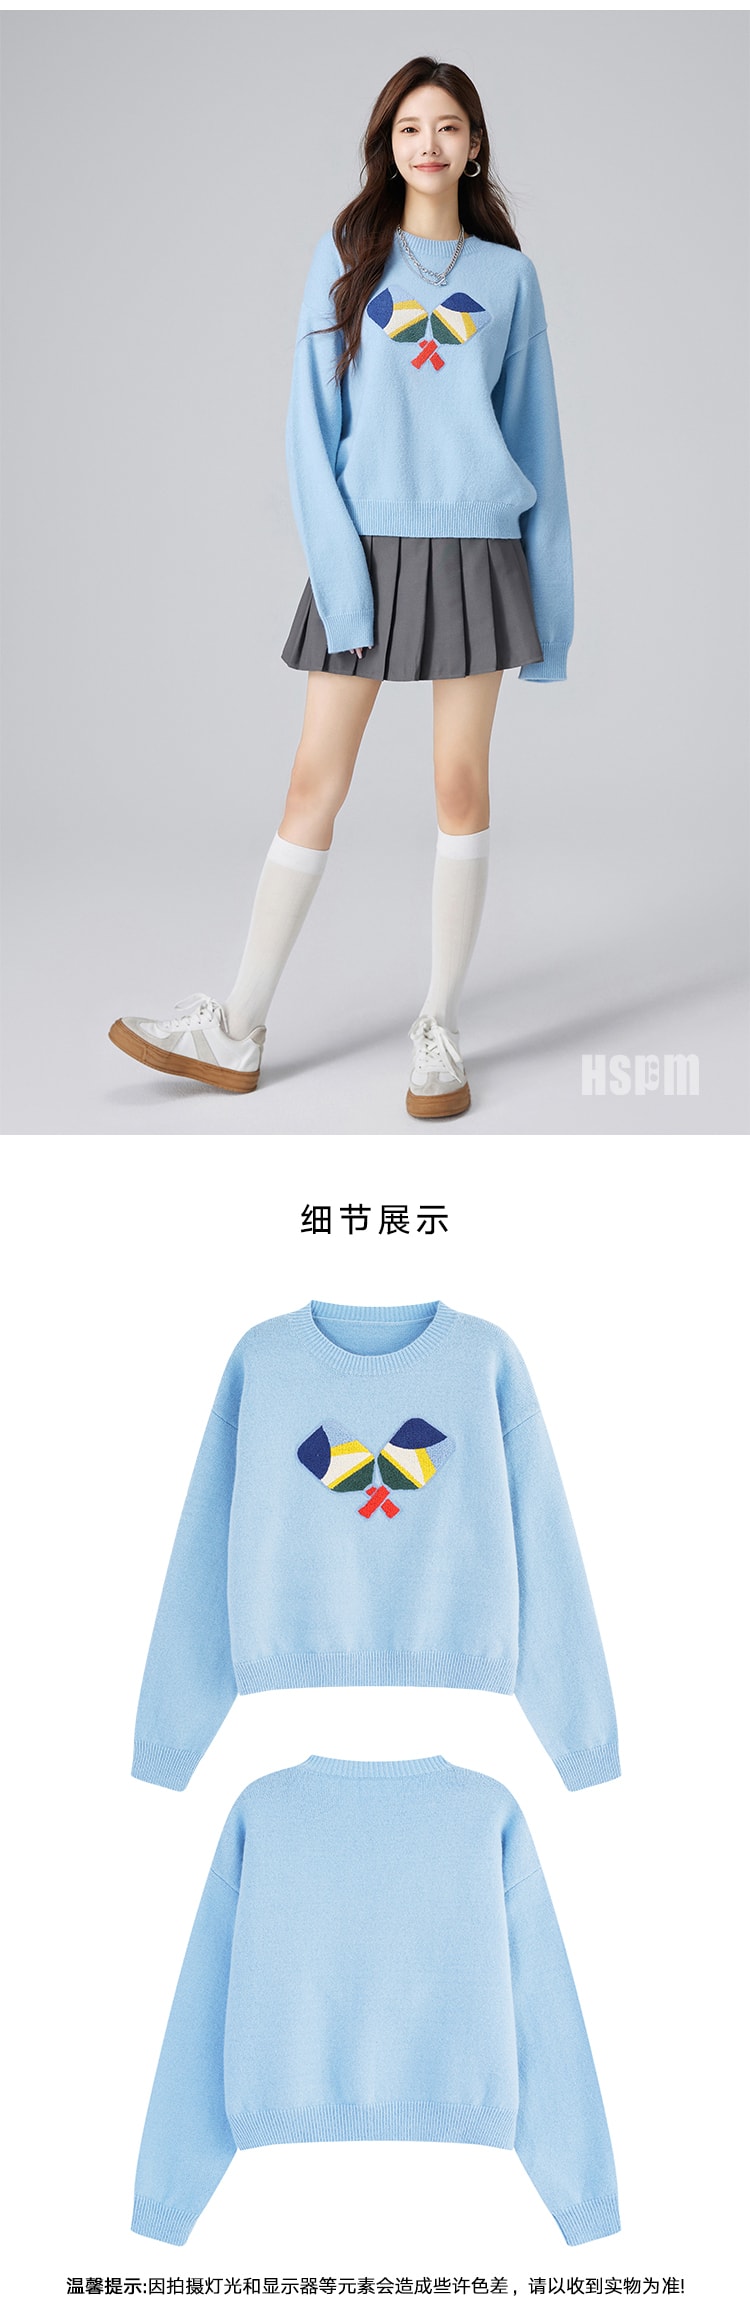 【中国直邮】HSPM 新款休闲百搭刺绣针织衫 蓝色 M